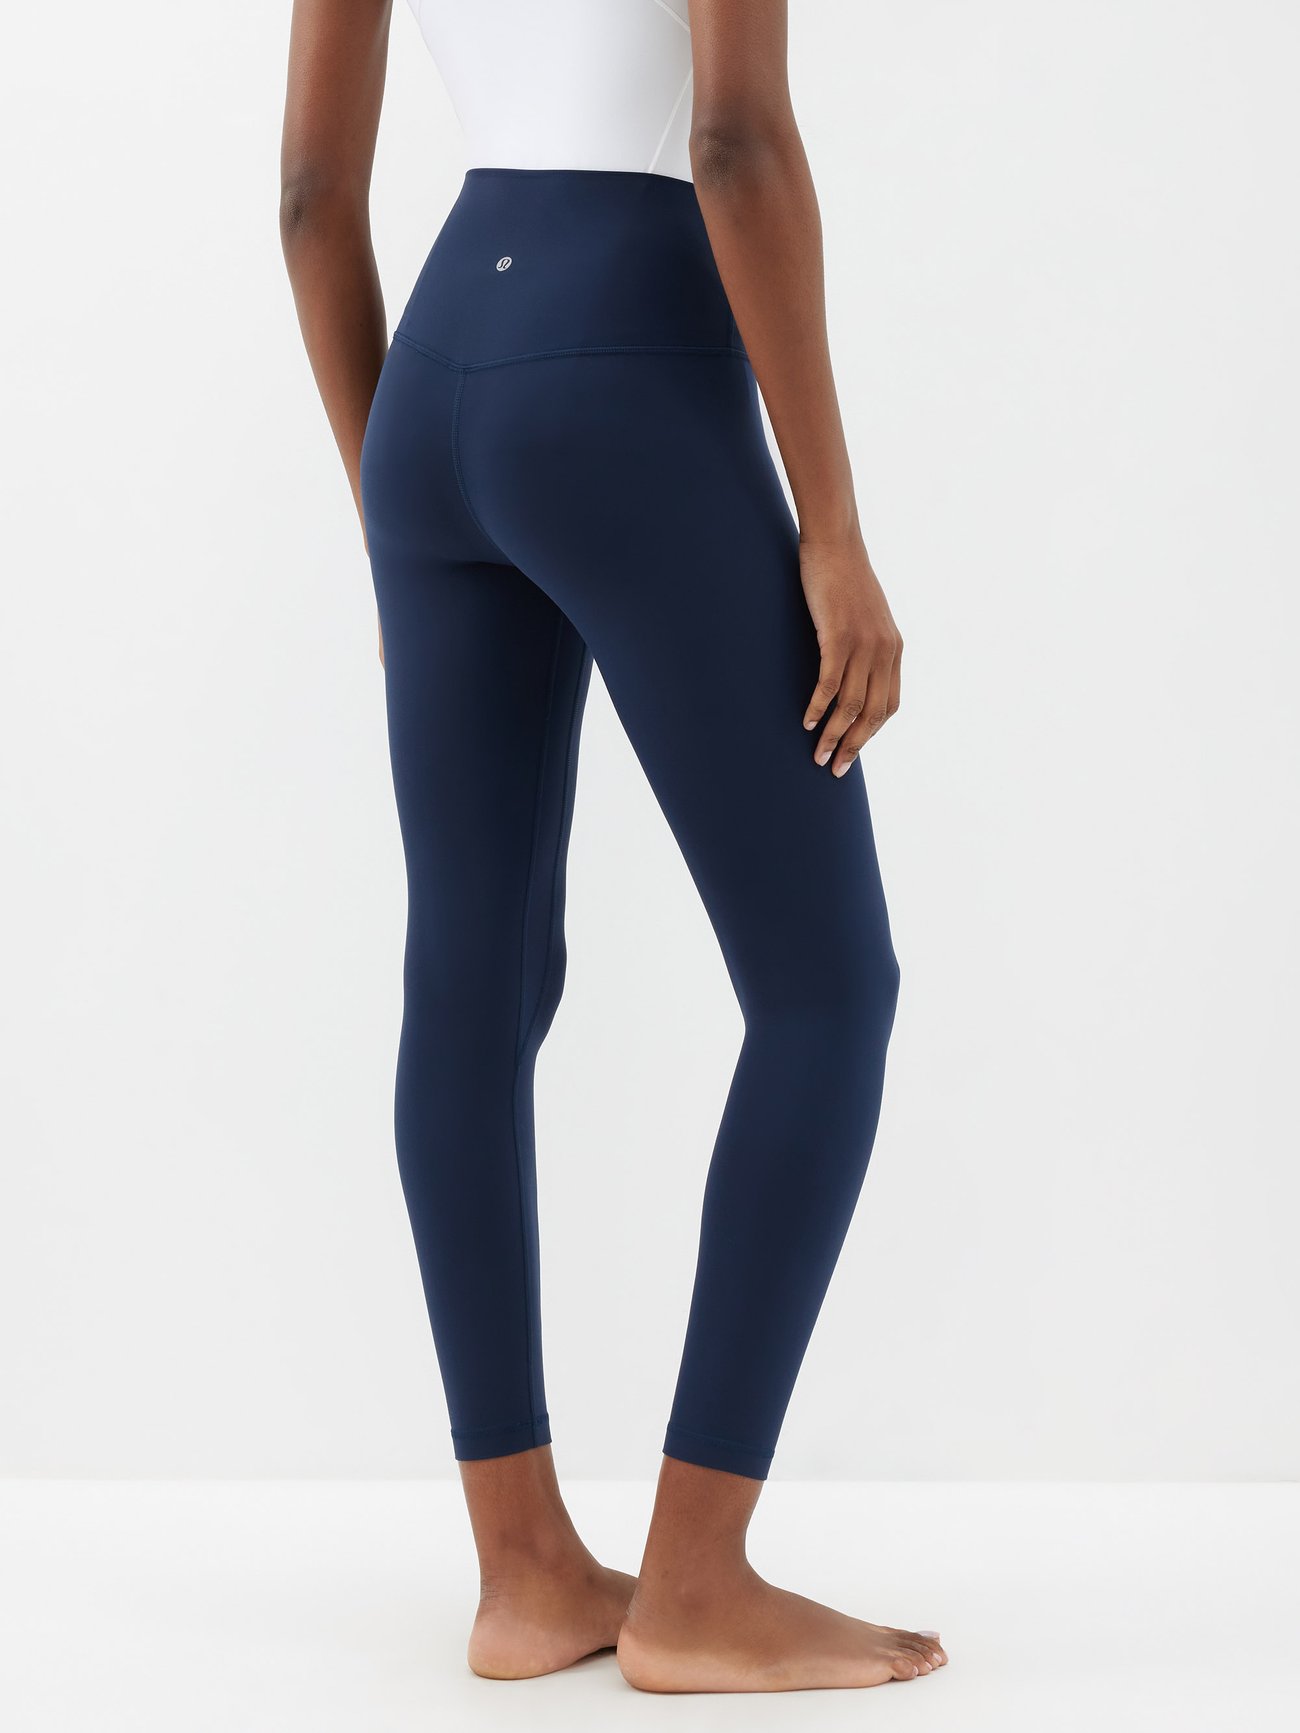 Lululemon Light Blue Align Leggings Size 4 - $45 (54% Off Retail) - From  Kylie